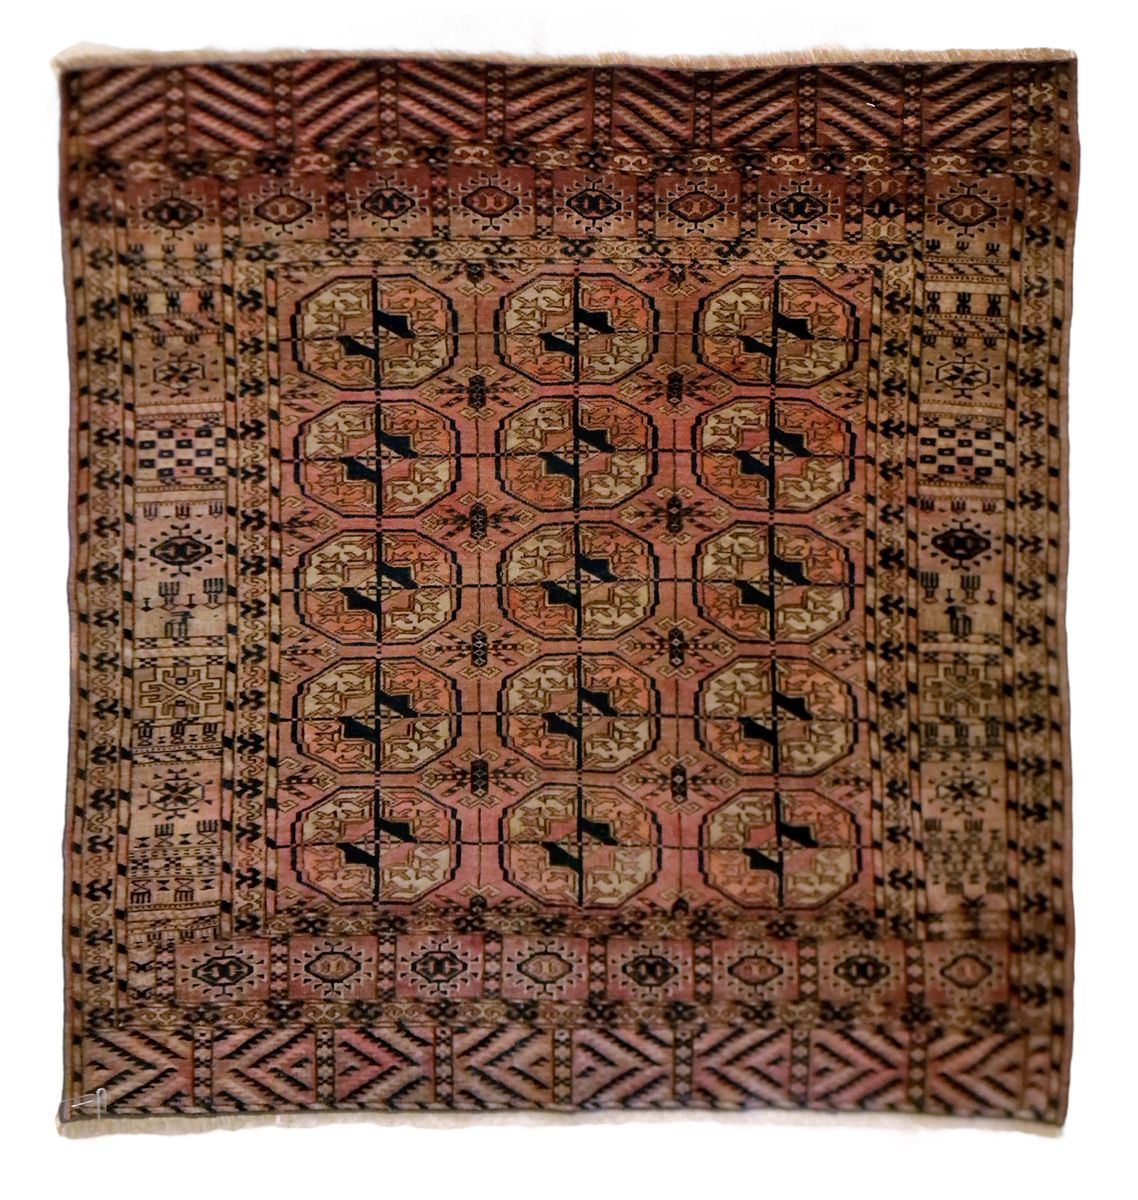 TAPIS YAMUT-BOUKHARA AU décor géométrique, bonne condition.
Dimensions : 100 x 1&hellip;